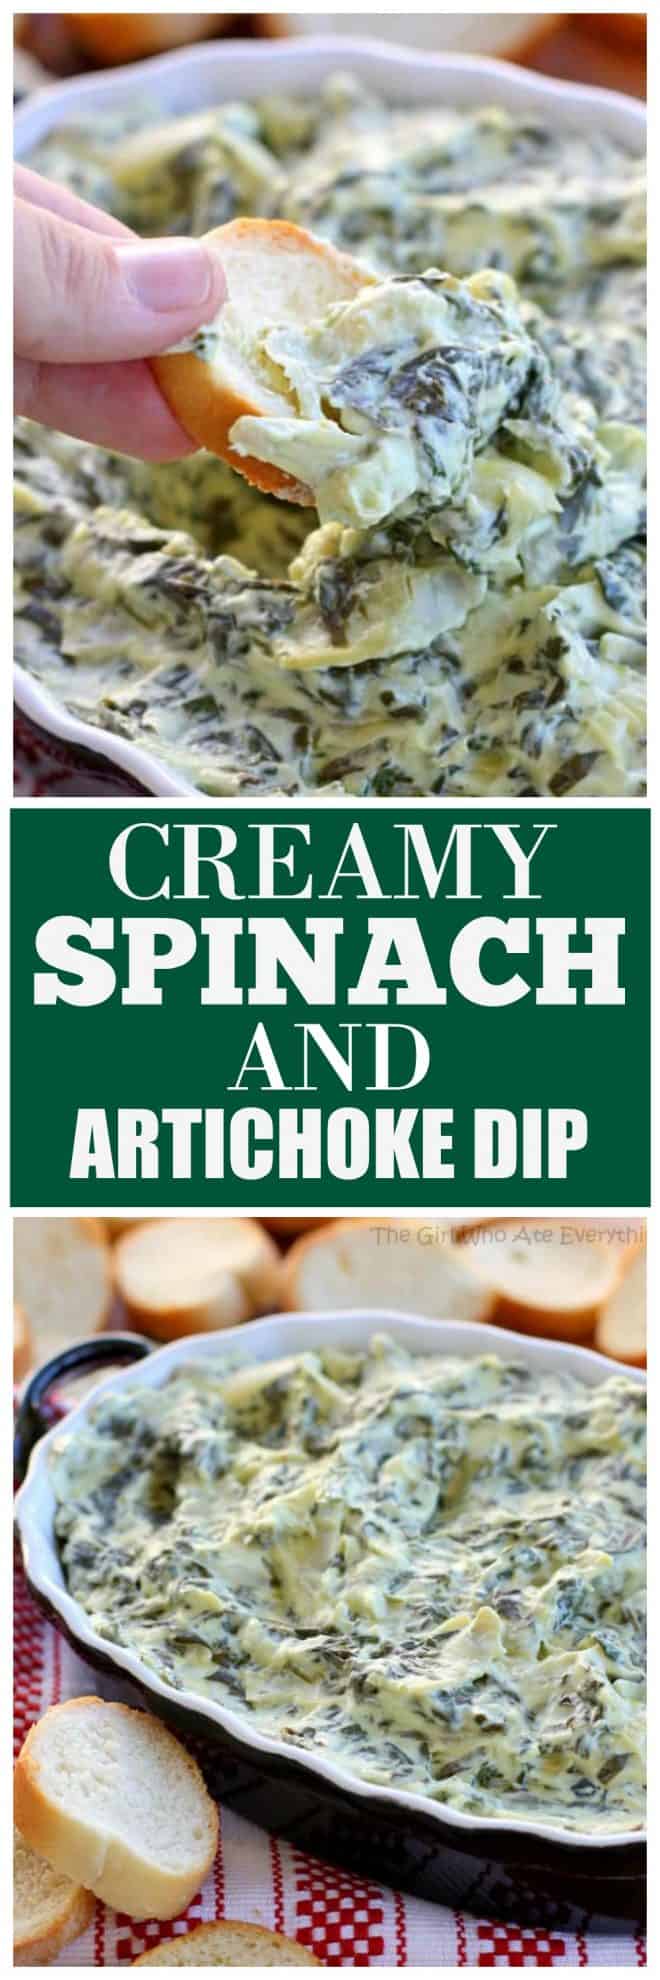 Creamy Spinach and Artichoke Dip